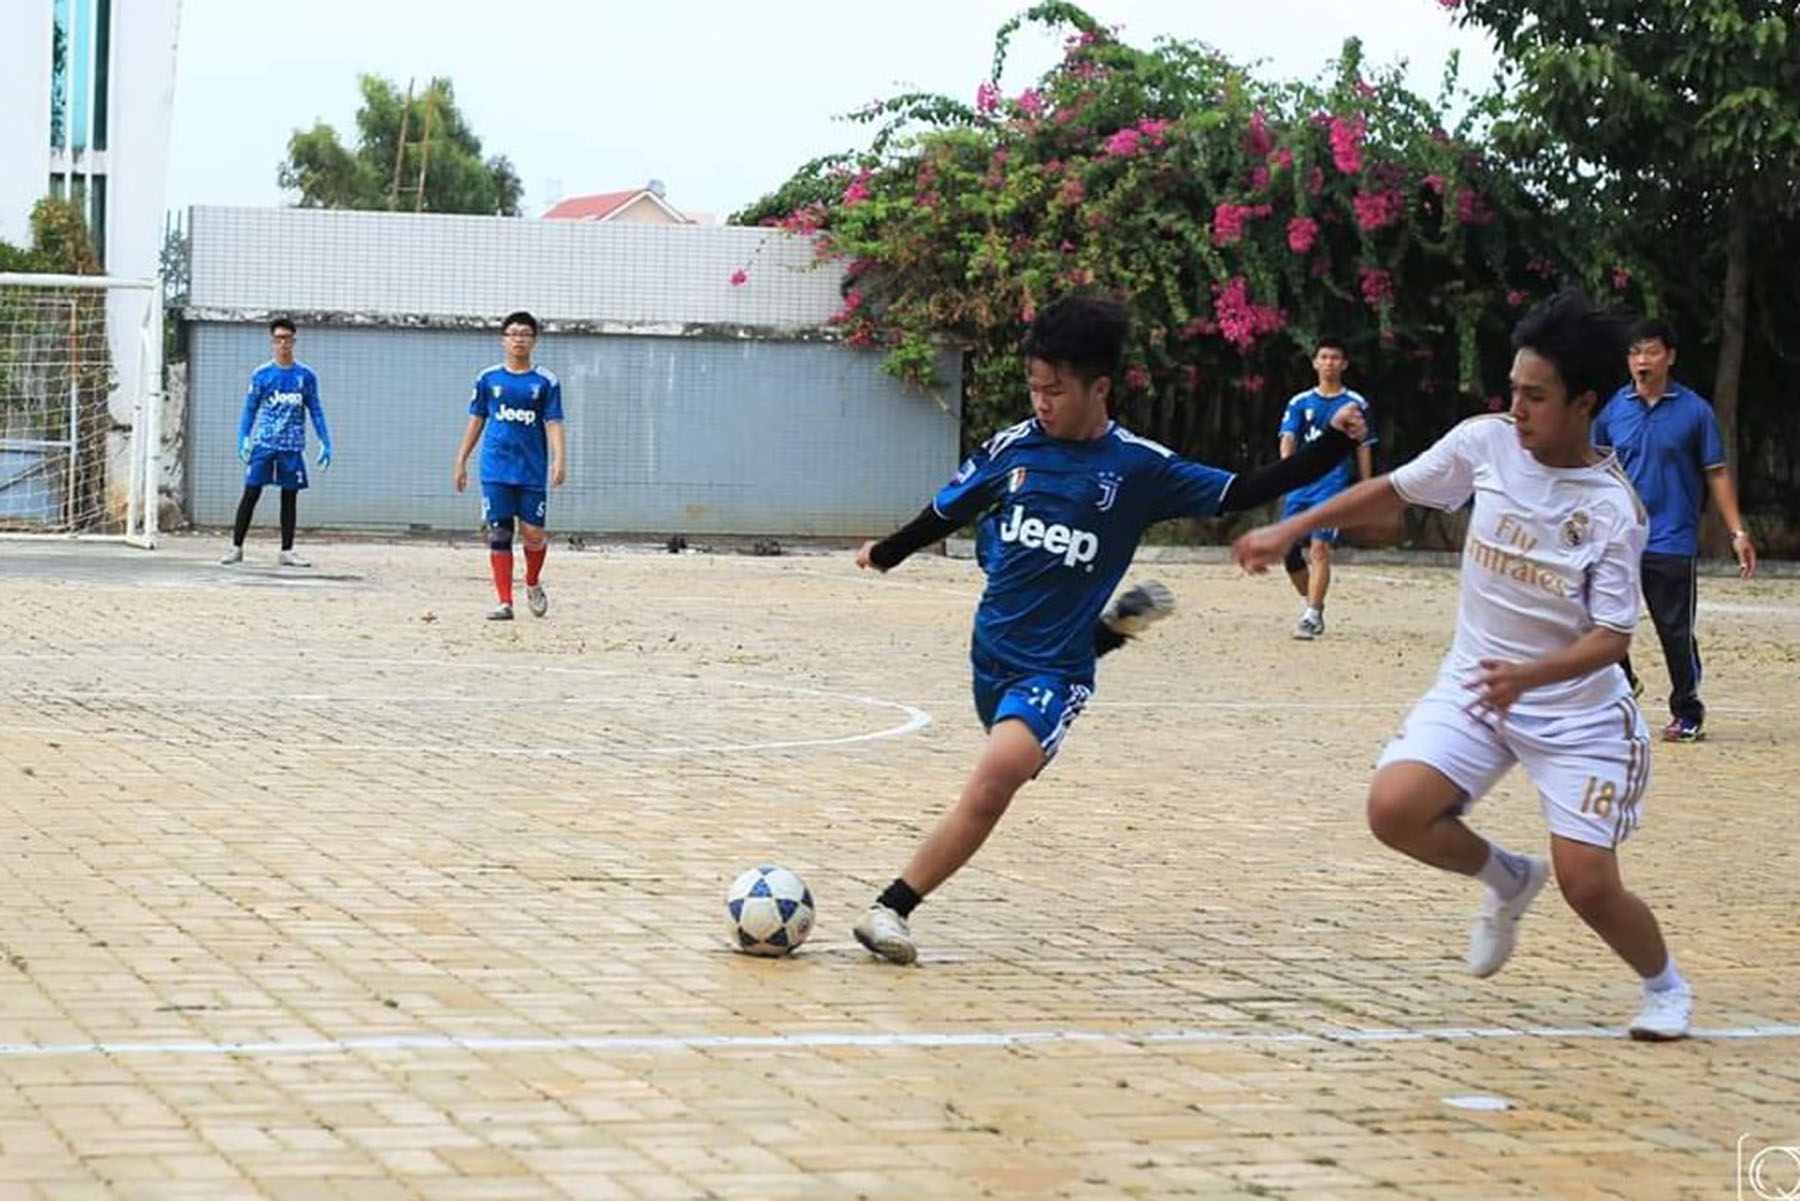 HS Trường THPT chuyên Lê Quý Đôn tham gia hoạt động thể thao trong trường học.